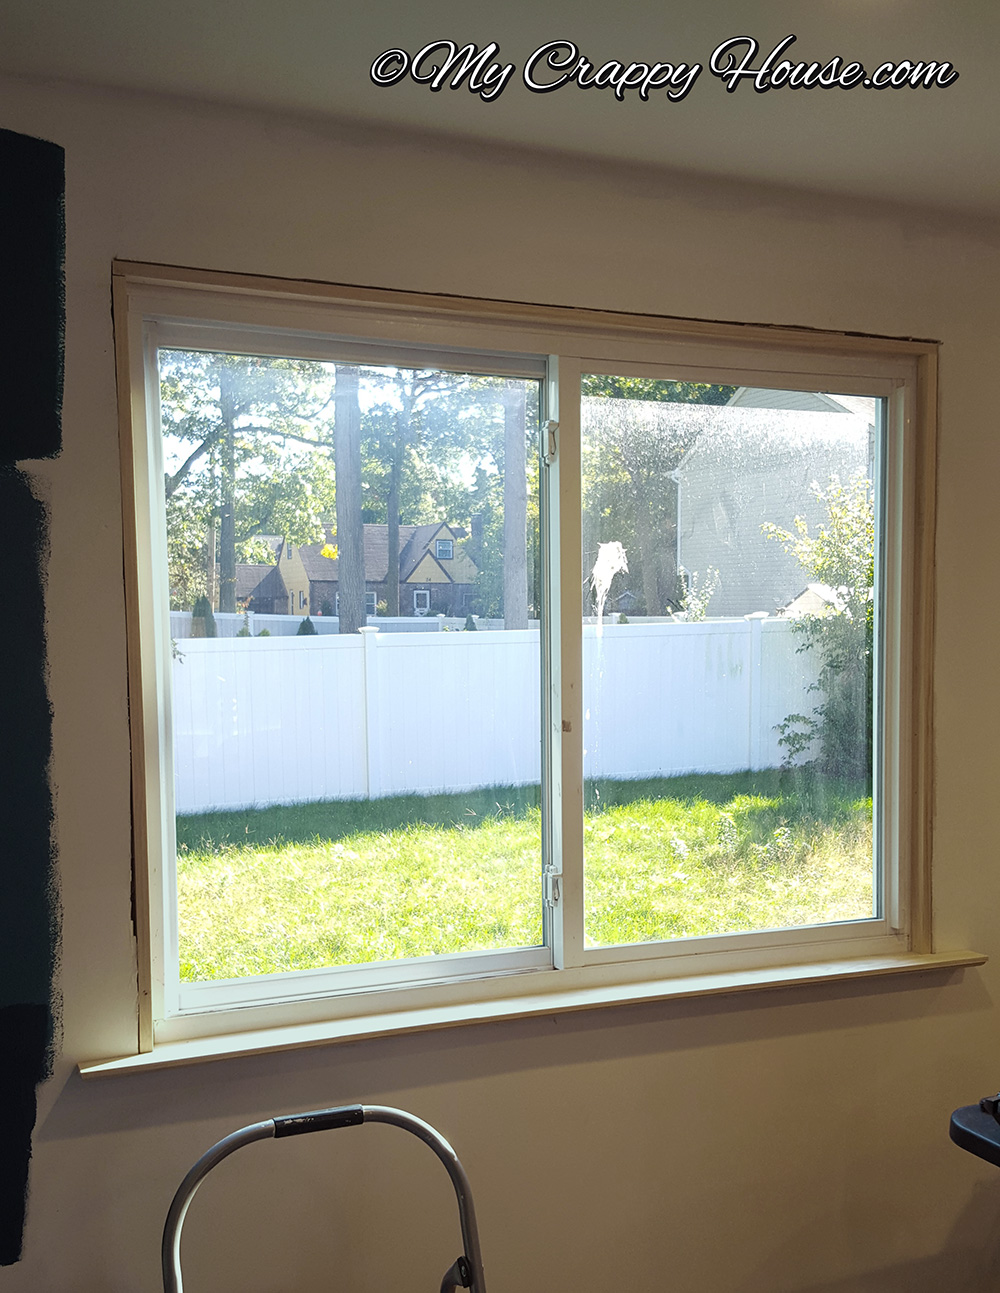 A window without window trim